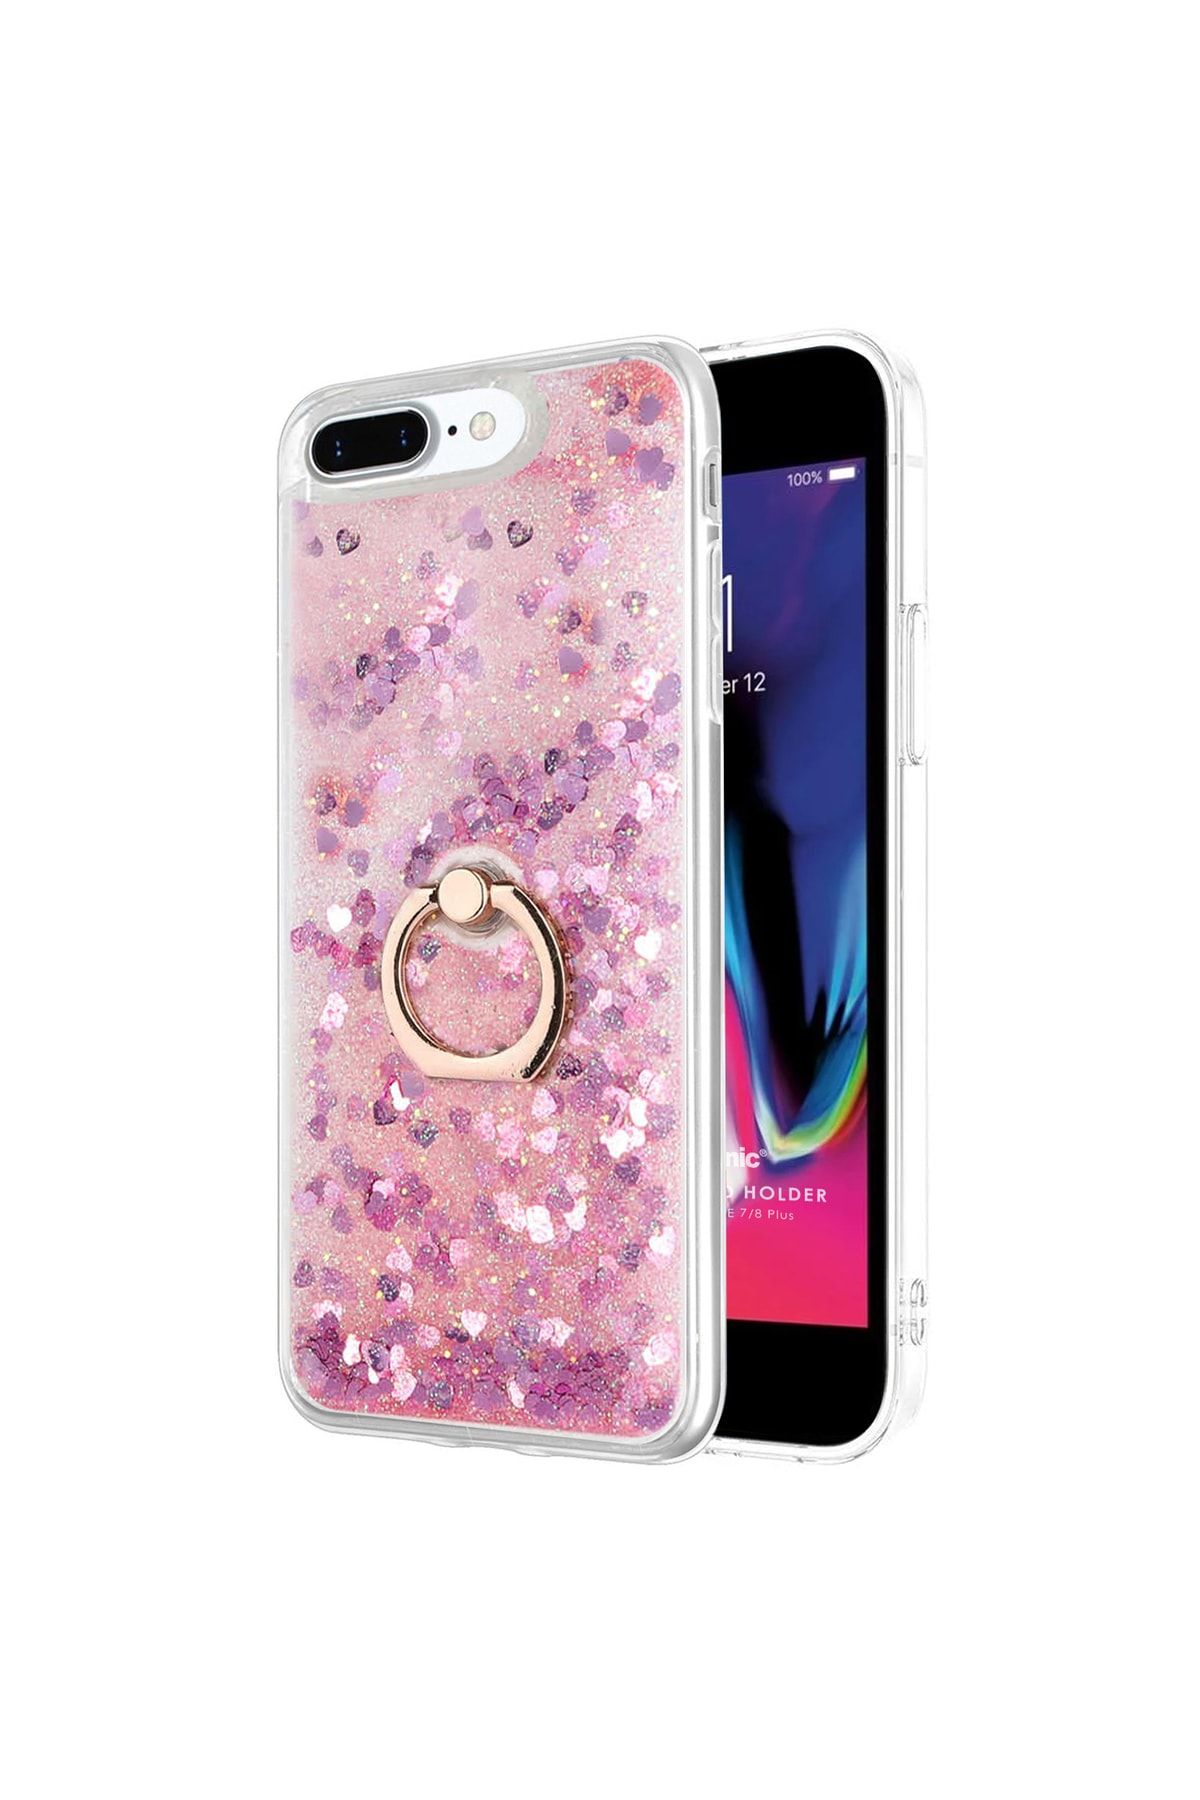 Microsonic Apple Iphone 8 Plus Kılıf Glitter Liquid Holder Pembe